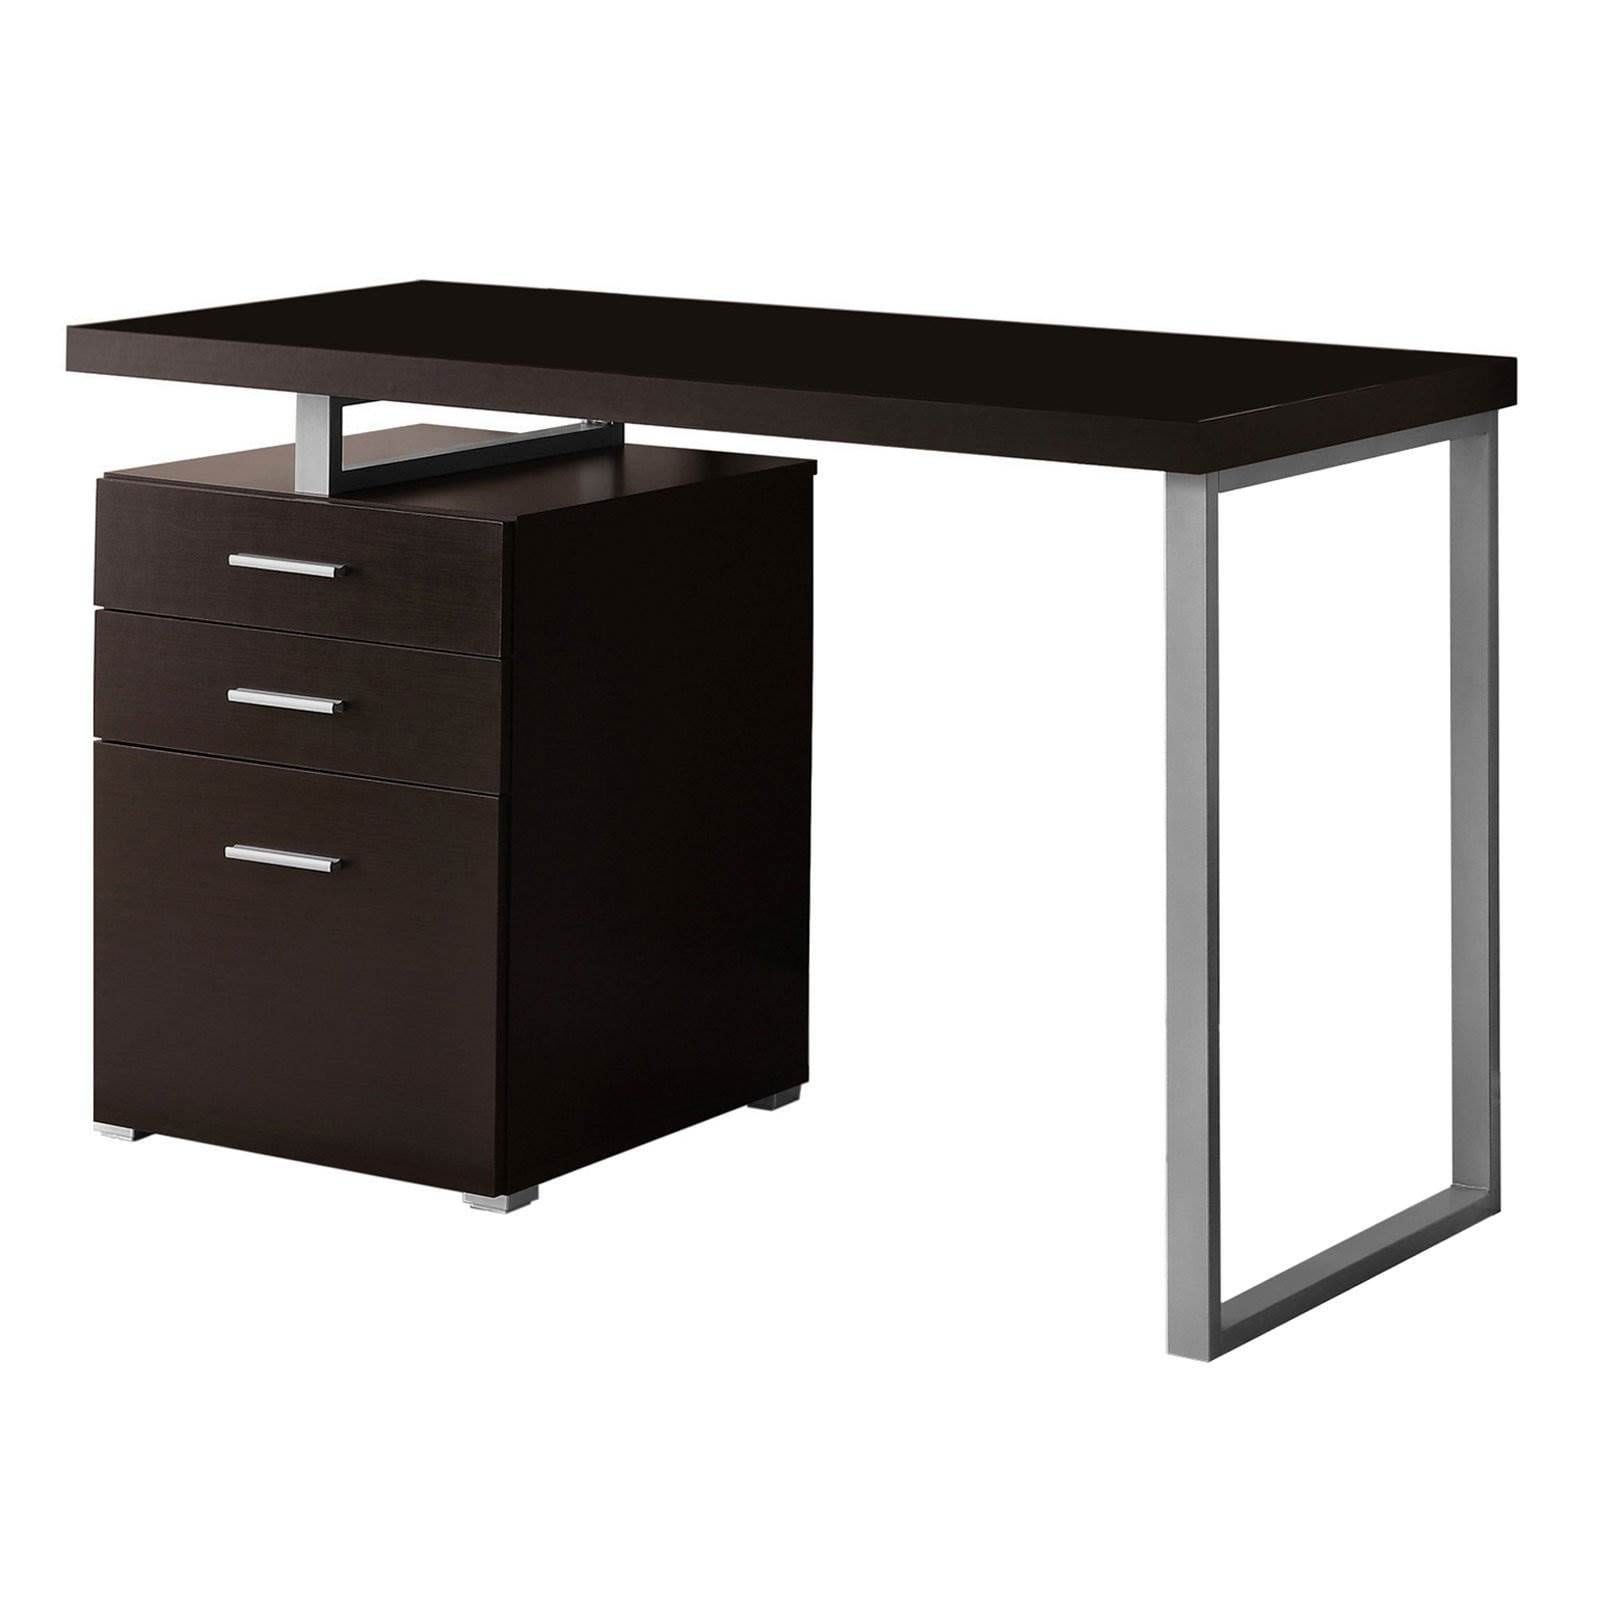 Monarch Specialties 47 Inch Modern Office Furniture Computer Desk Dark Taupe 